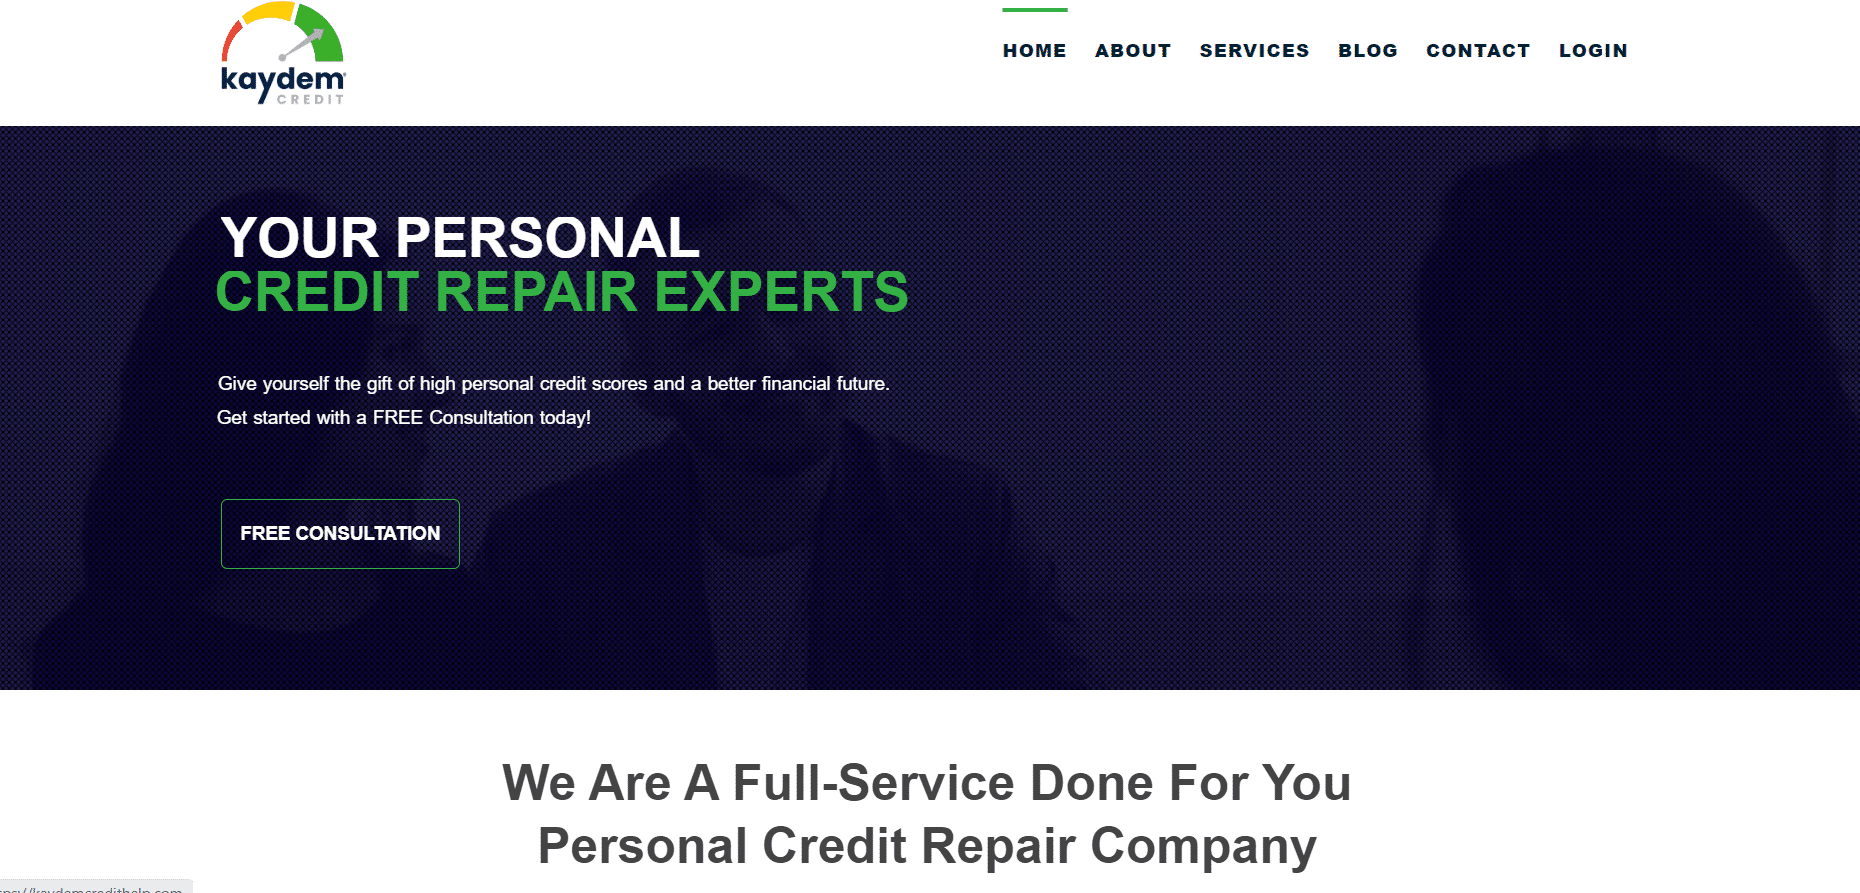 kaydem credit repair home page